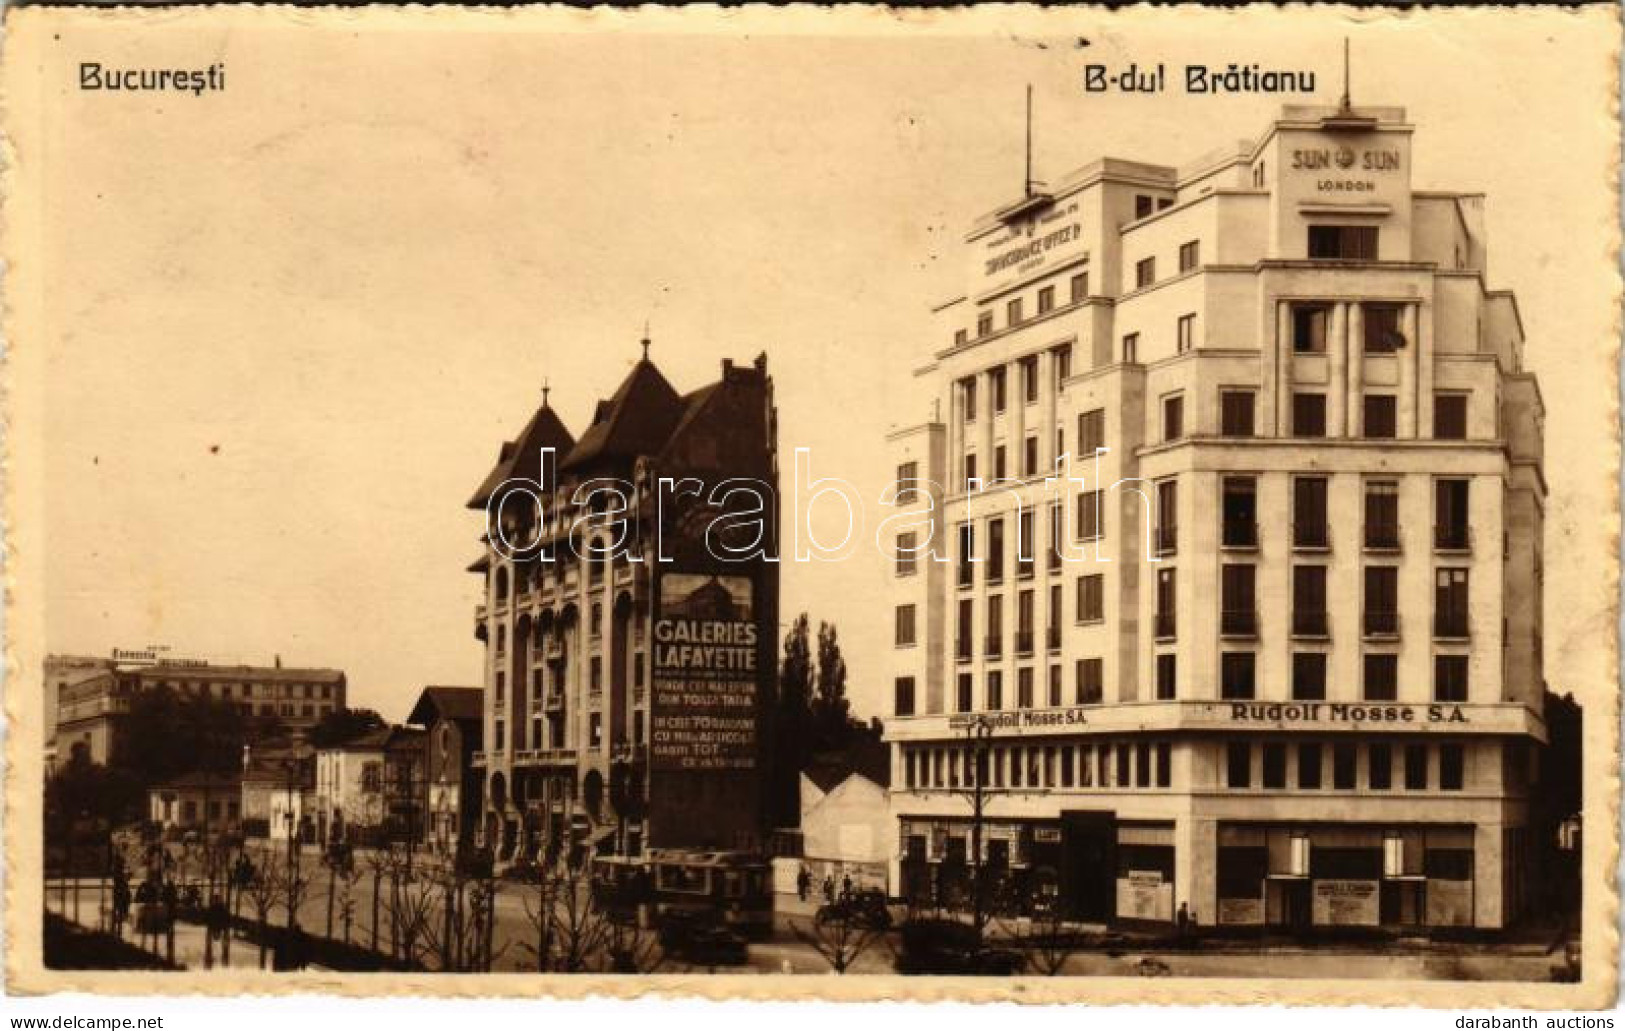 T2/T3 1933 Bucharest, Bukarest, Bucuresti, Bucuresci; B-dul Bratianu, Rudolf Mosse S.A., Sun Insurance Office Ltd. Londo - Non Classificati